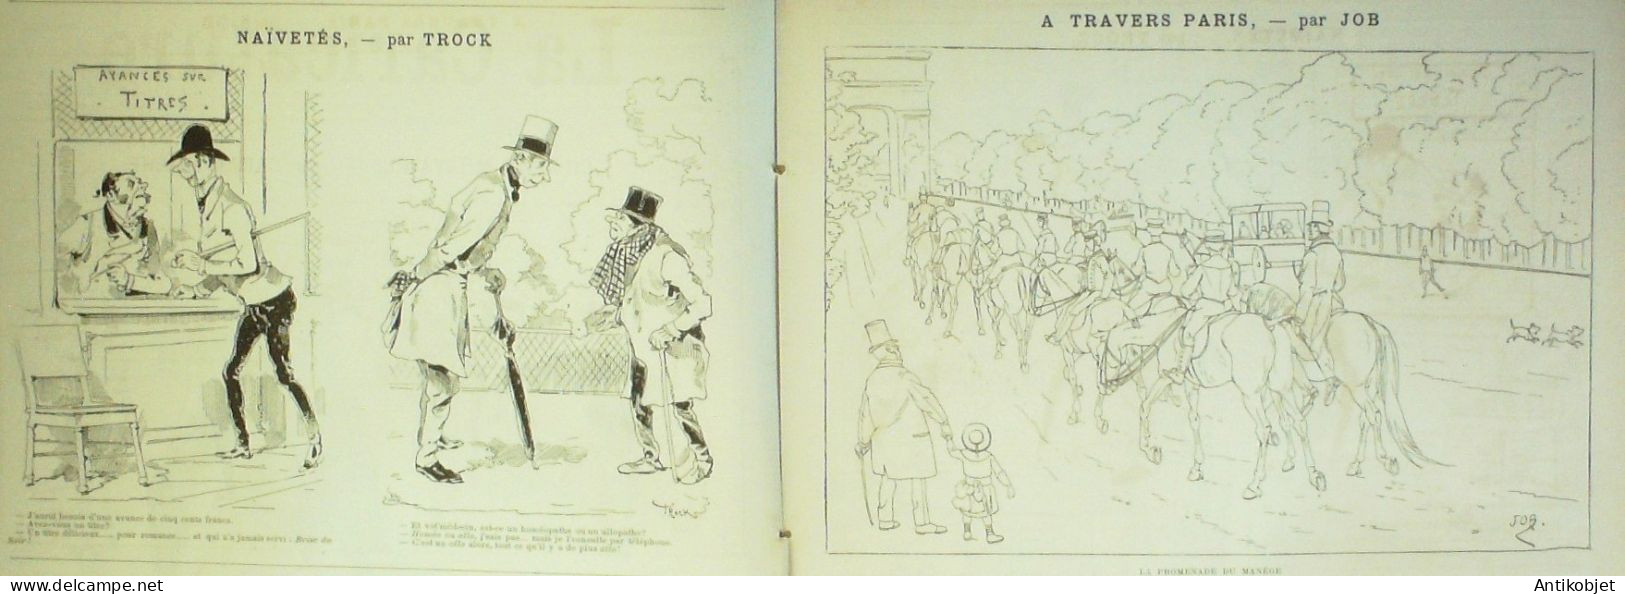 La Caricature 1886 N°335 Croquis Militaires Caran D'Ache Amiral Aube Par Luque  Draner Trock - Magazines - Before 1900